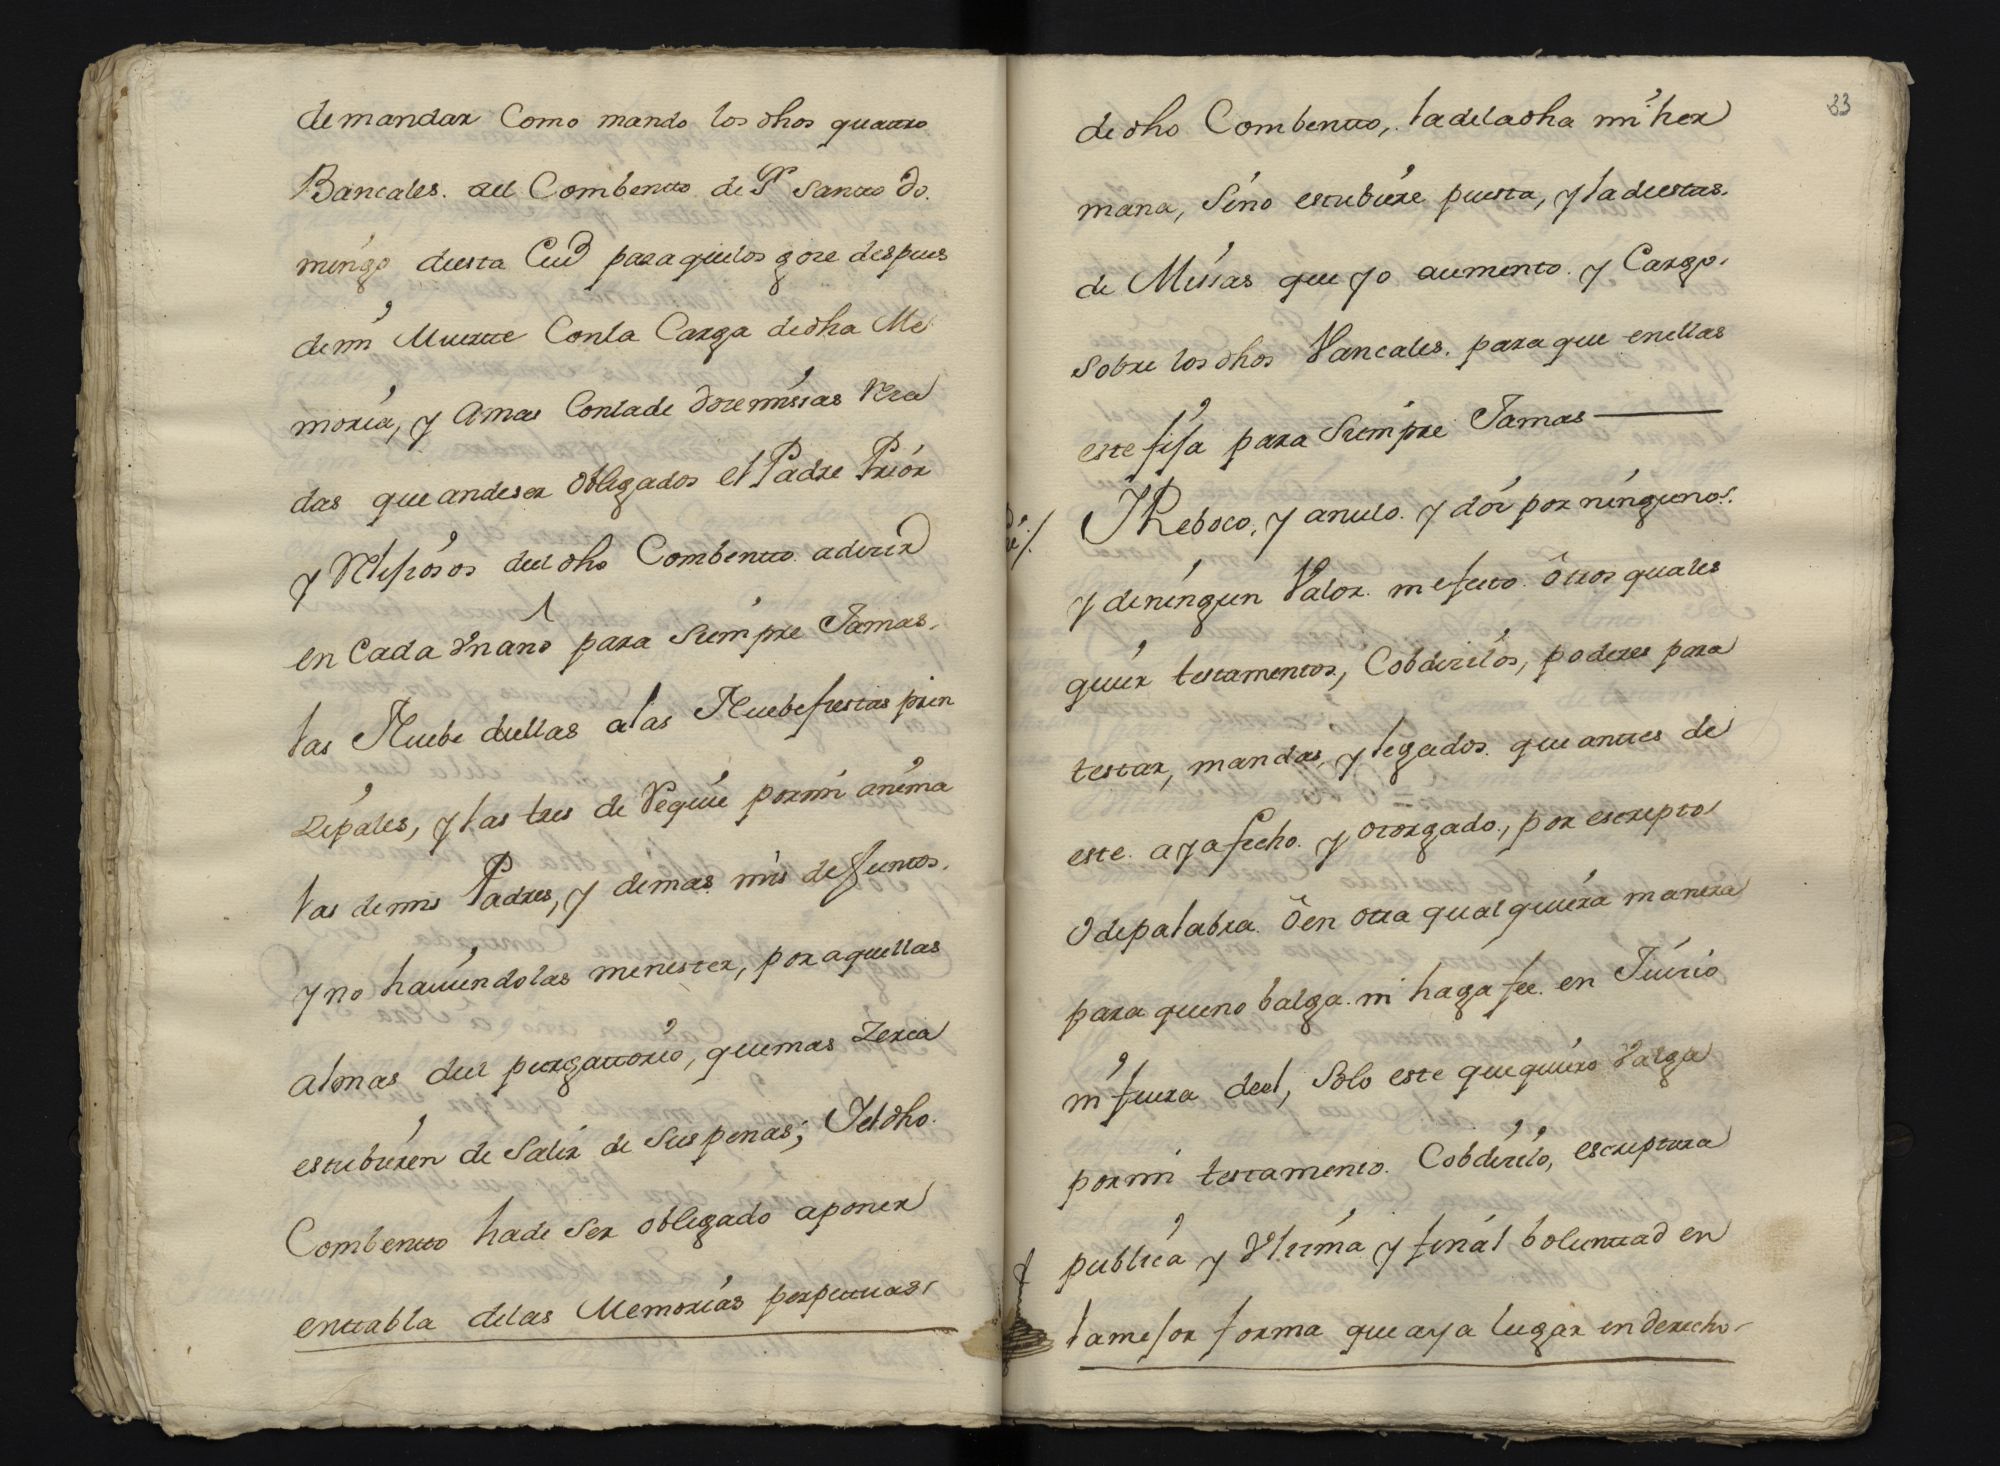 Escrituras de la pía memoria dejada por las hermanas Catalina y Ana  Buiza Godoy en sus testamentos a favor del Convento de Santa Bárbara.